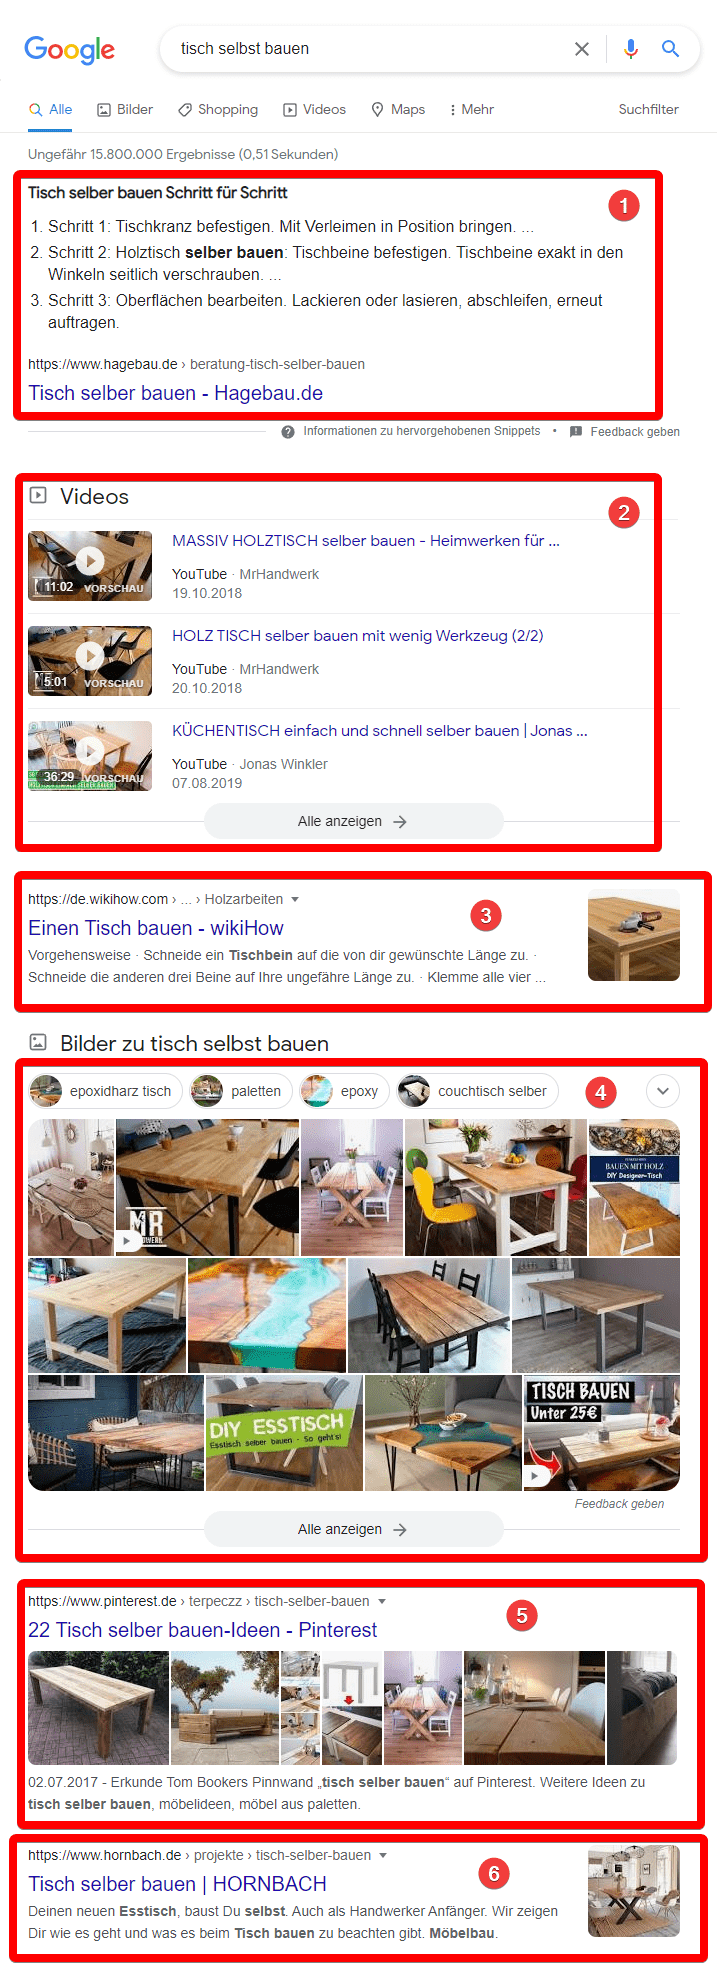 Google Suche tisch selbst bauen